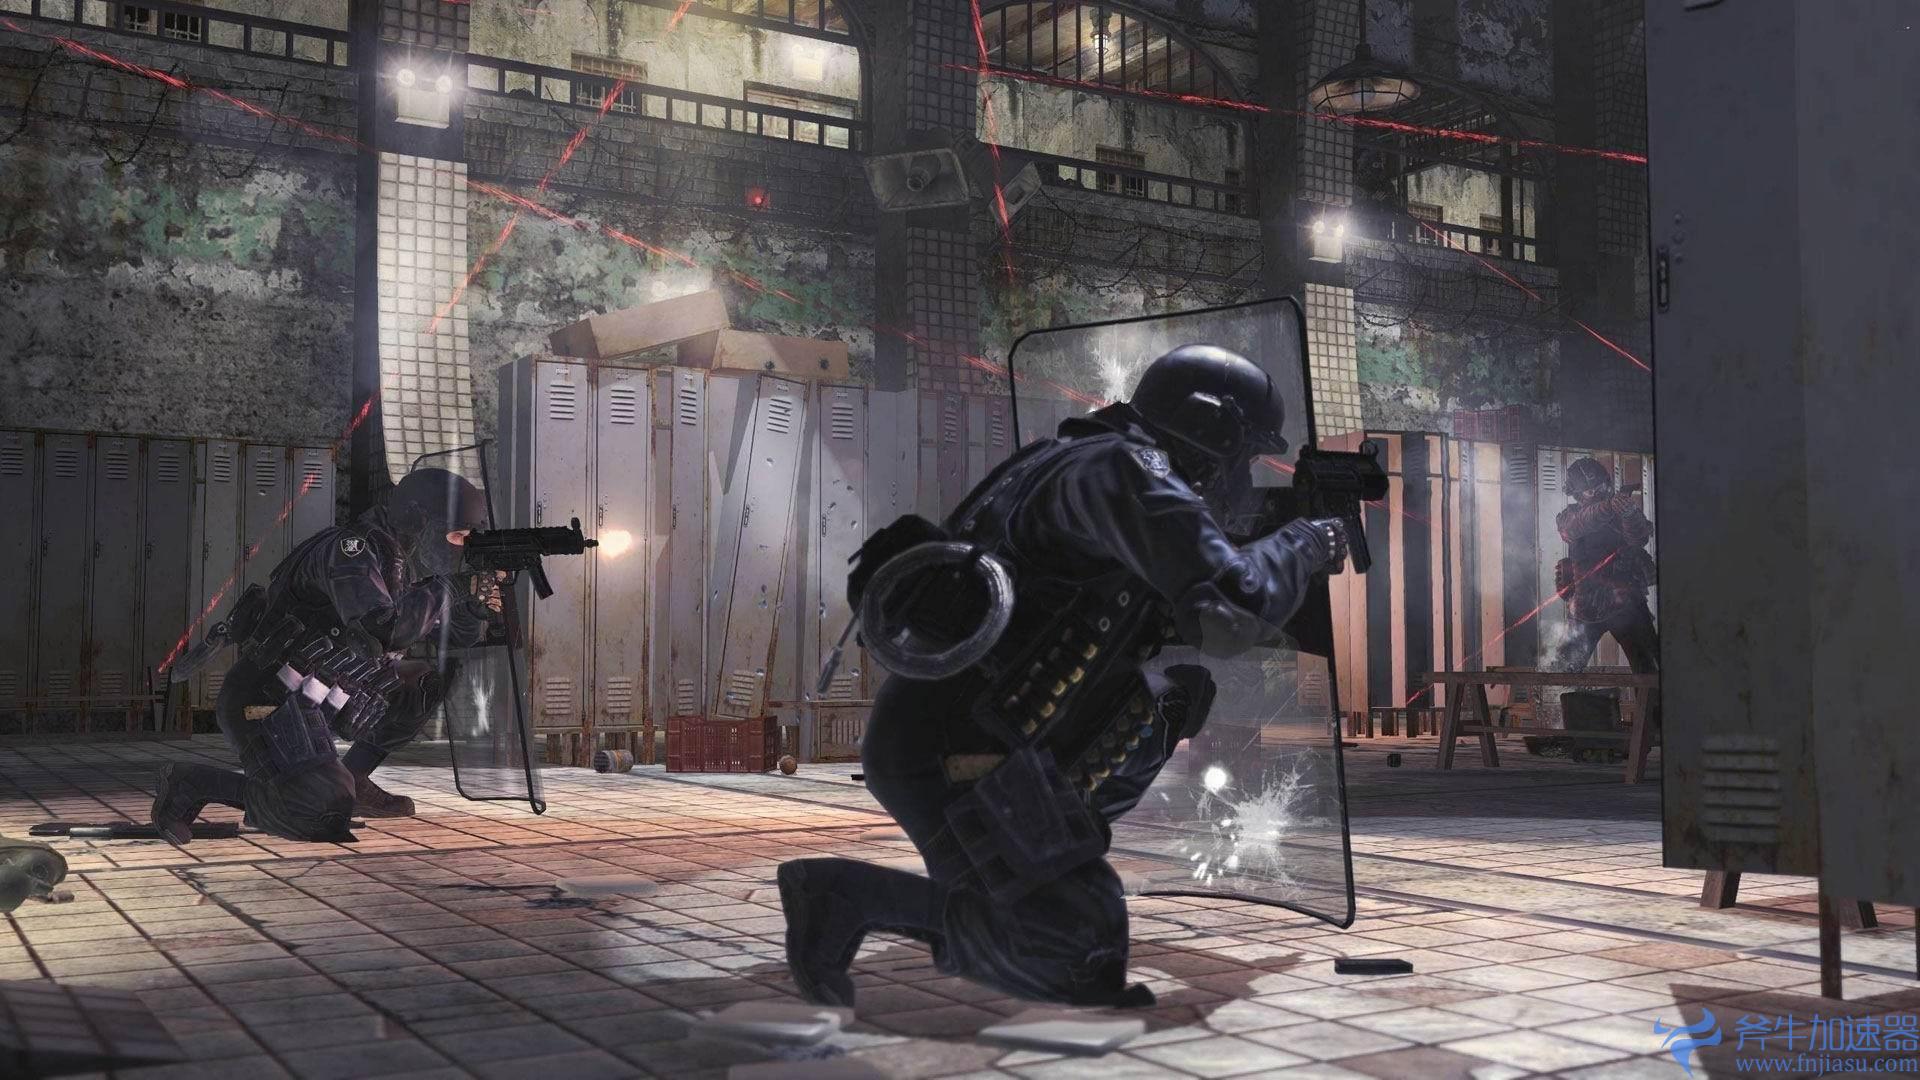 《现代战争2》与《战区2.0》第二赛季延期至2月15号